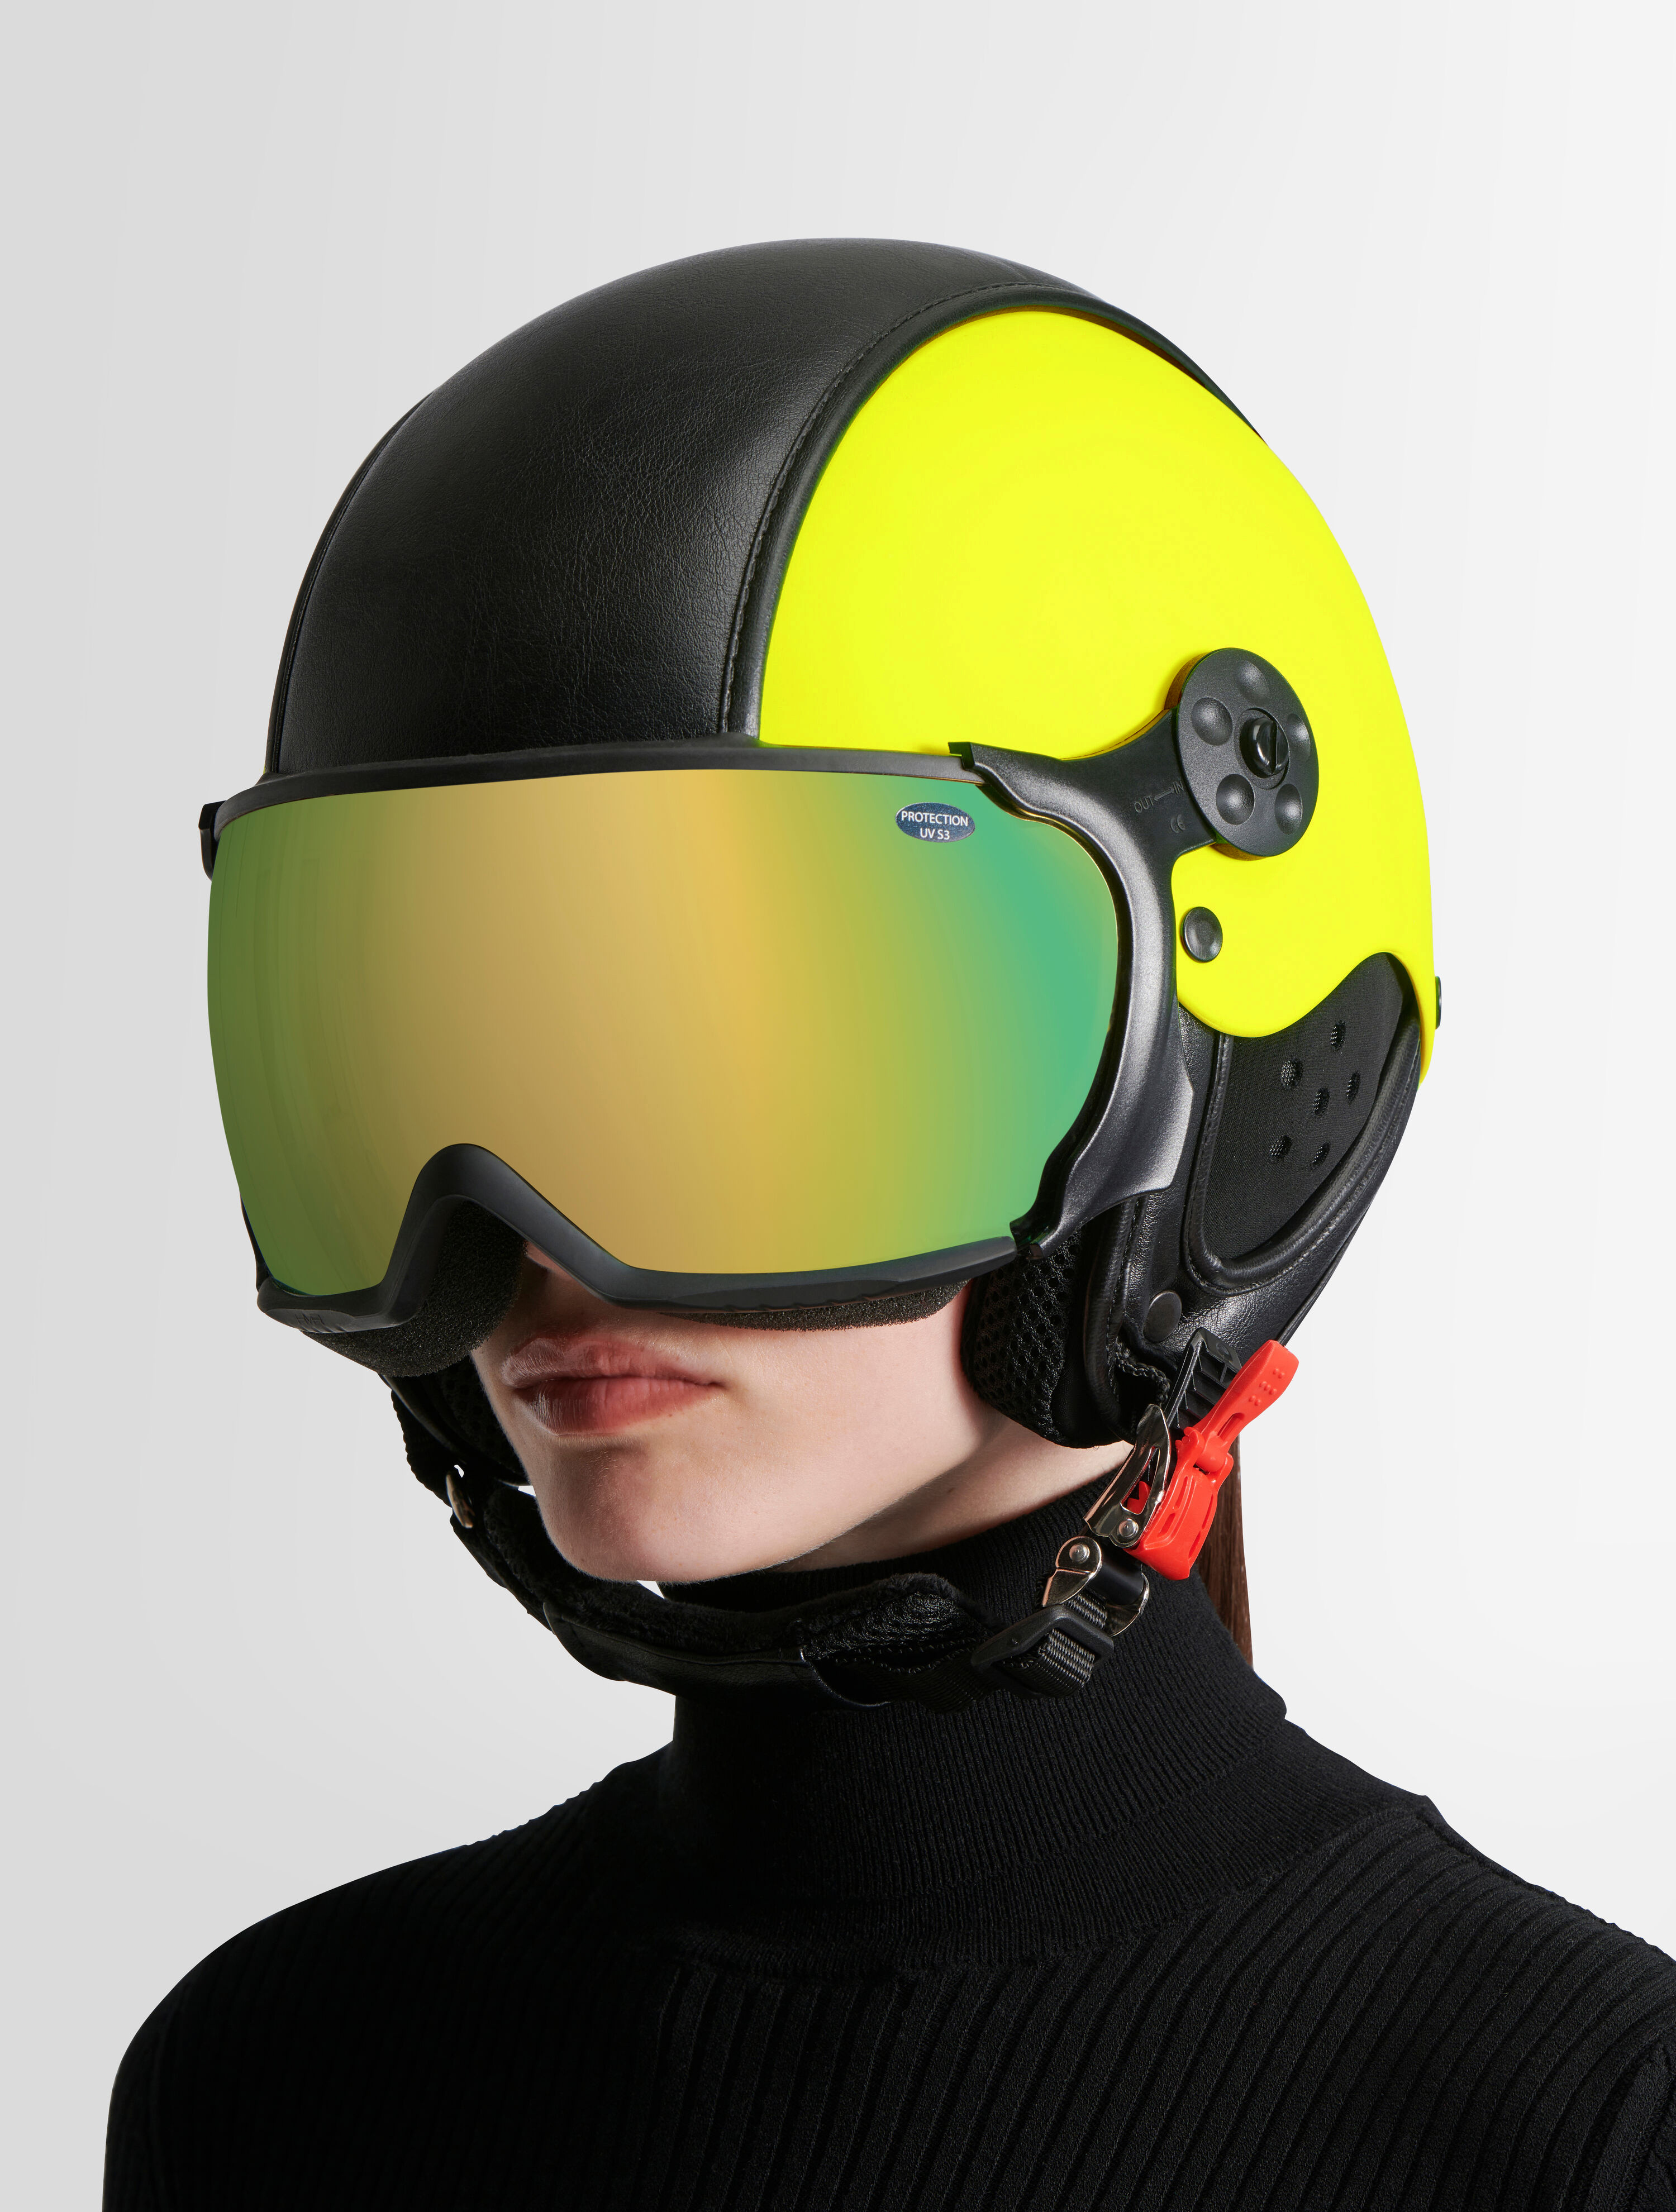 Yellow Firefly visor ski helmet, KASK